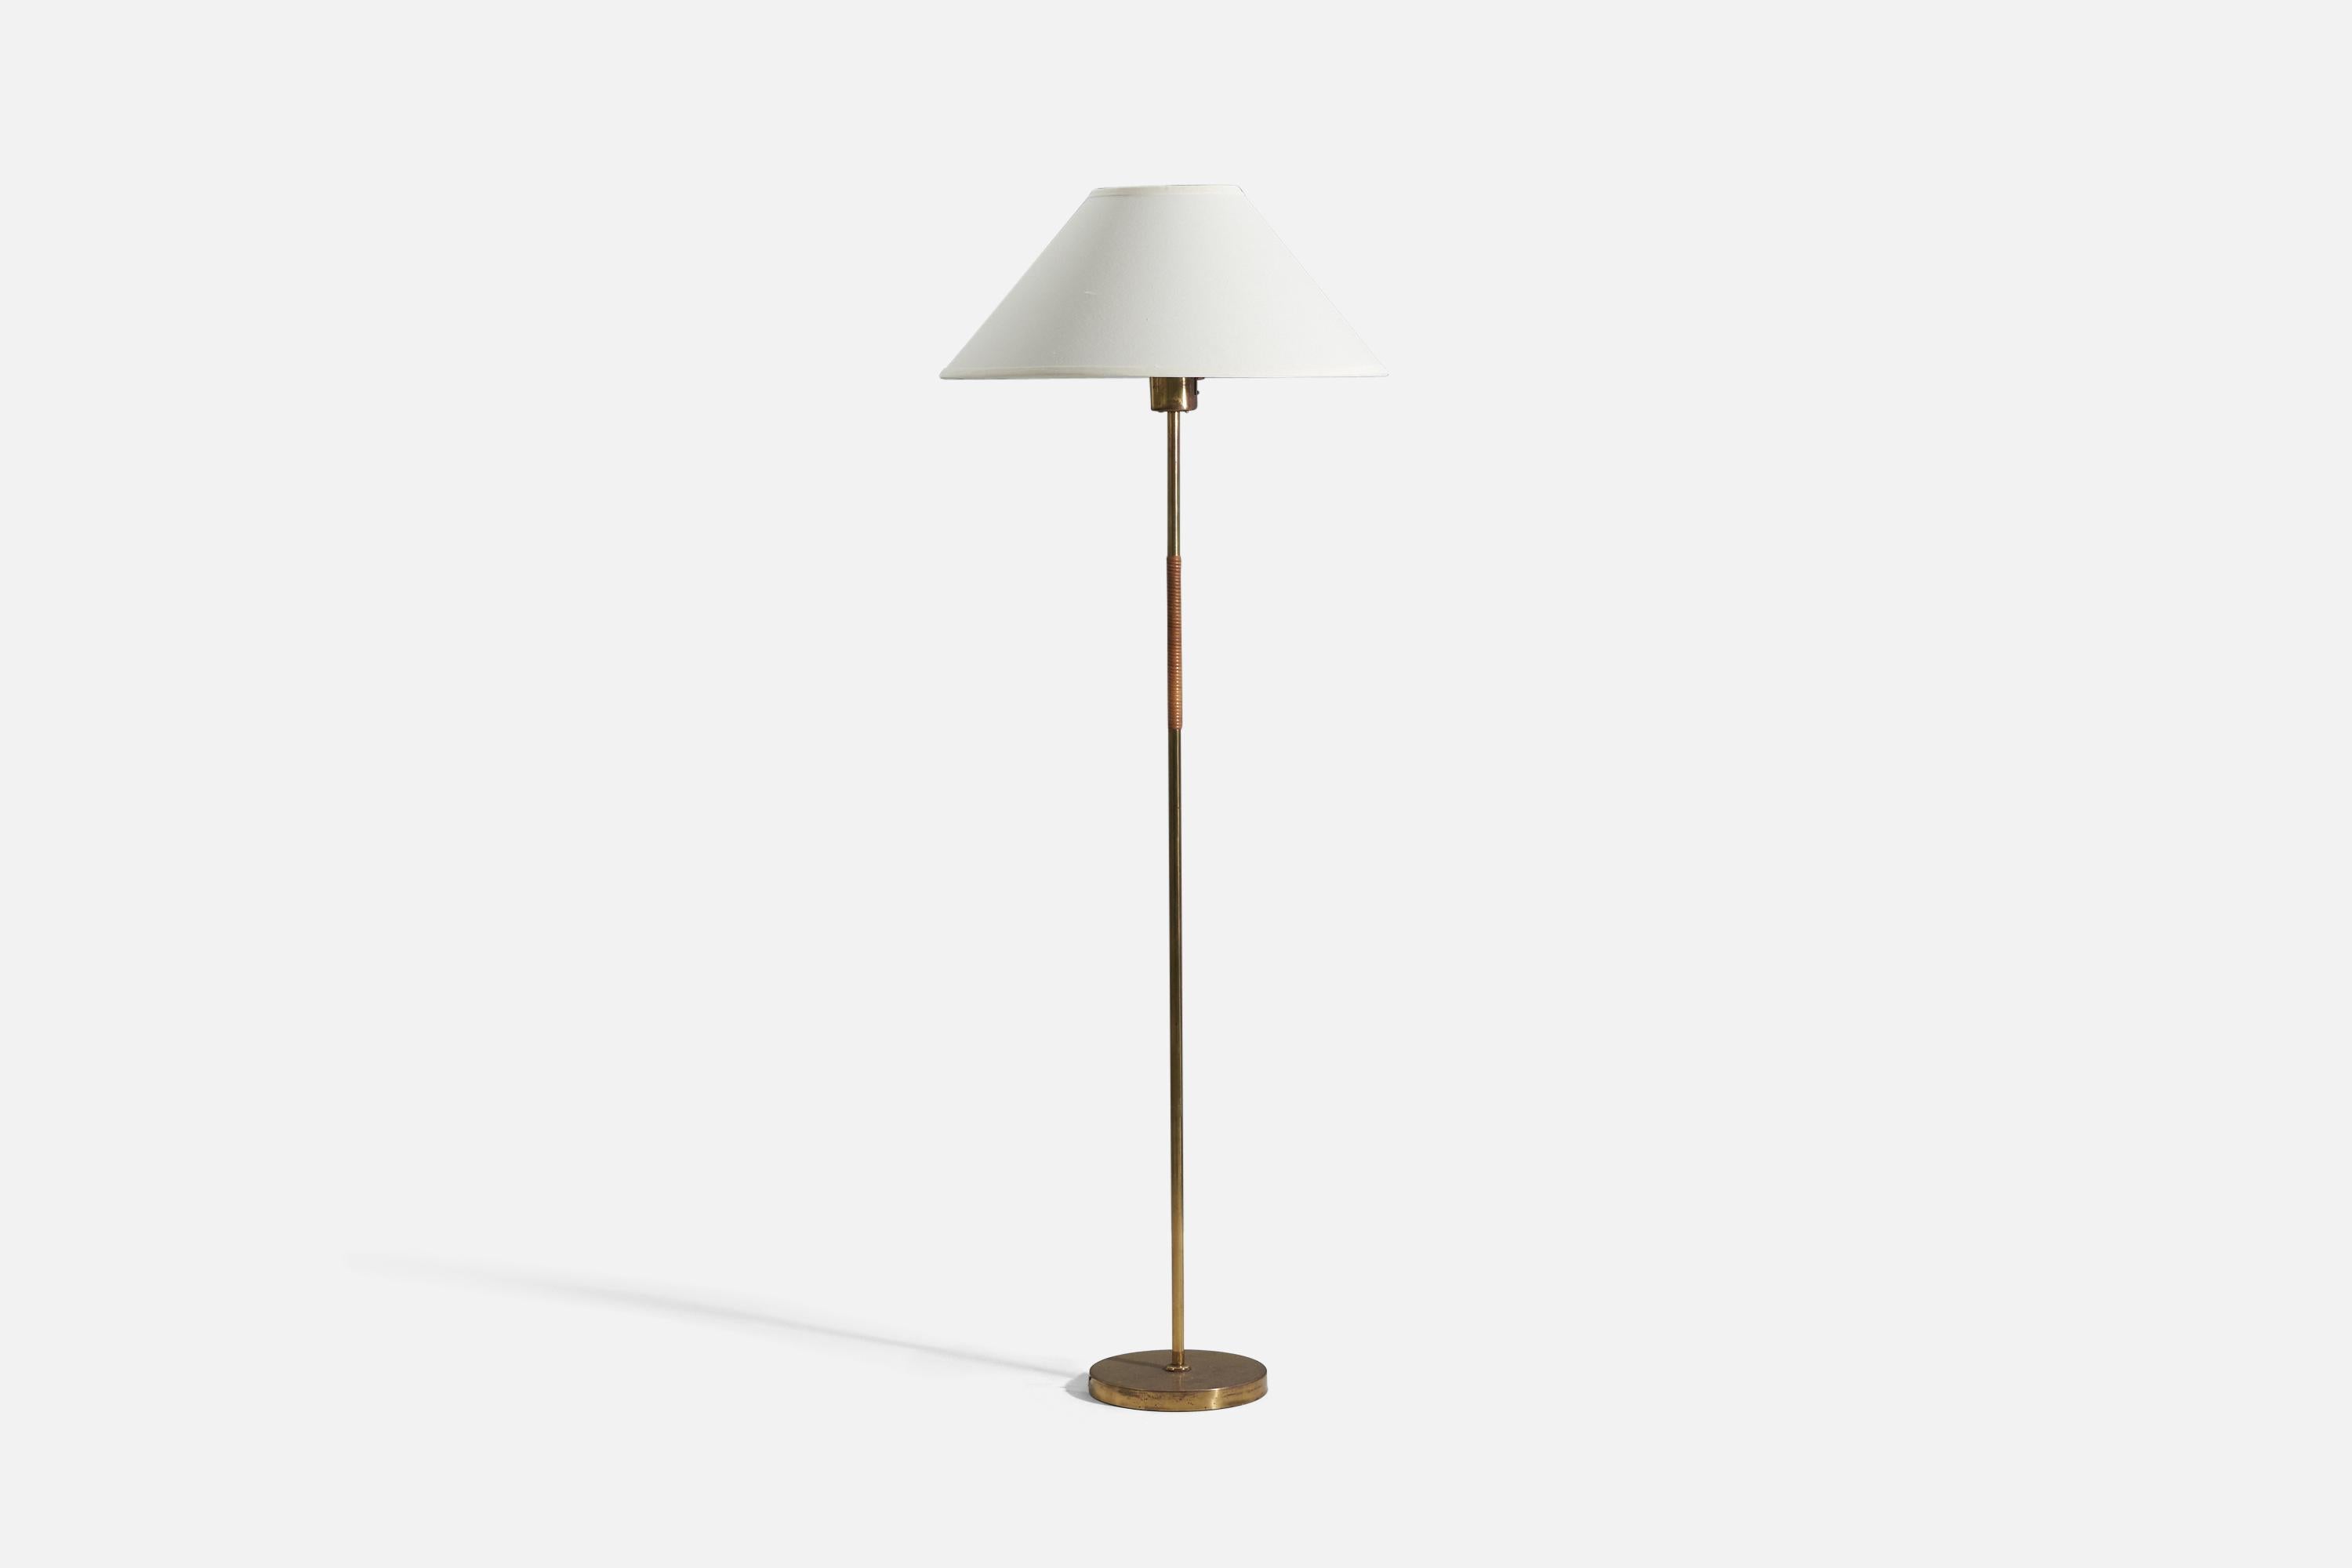 Stehleuchte aus Messing und Rattan (Modell 9621), entworfen von Paavo Tynell für Idman OY, Finnland, 1950er Jahre. 

Die Maße umfassen die Lampe mit Schirm. Lampenschirm nicht original.